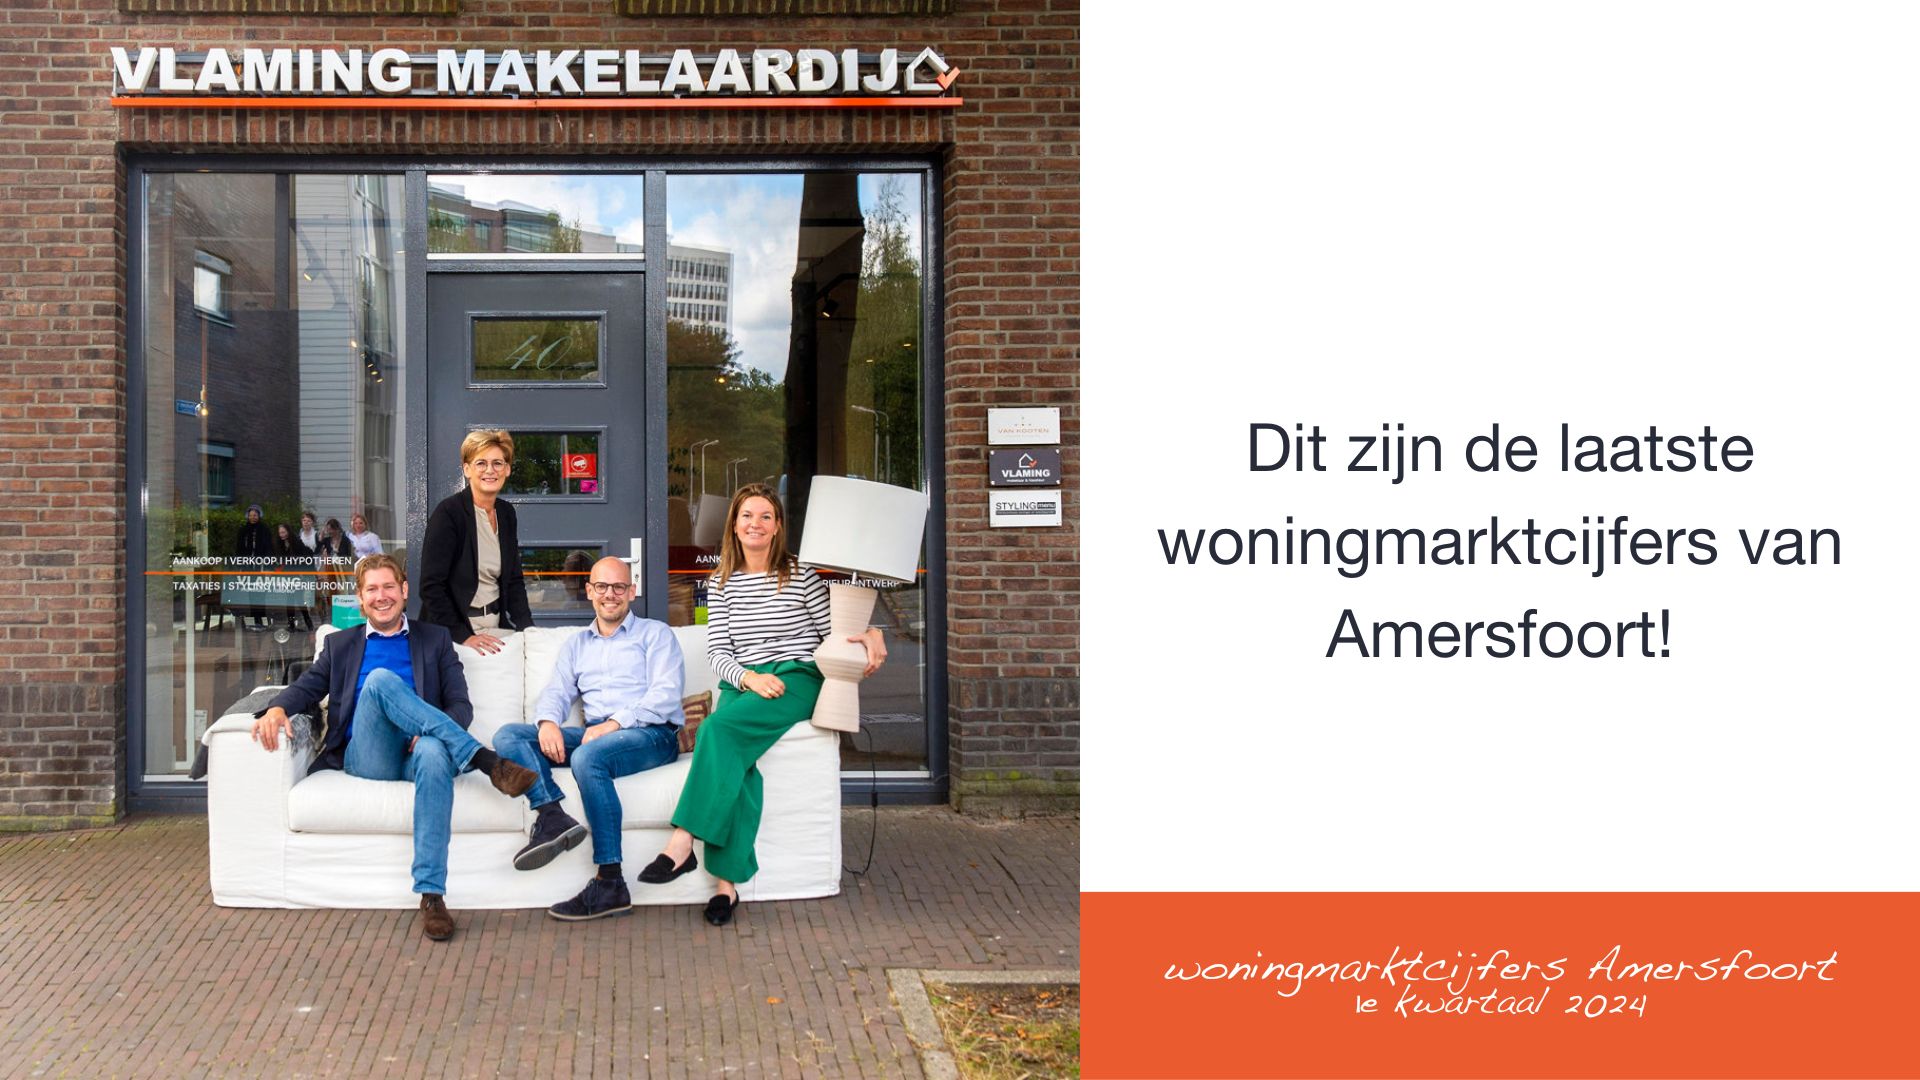 Dit zijn de laatste NVM woningmarktcijfers van Amersfoort